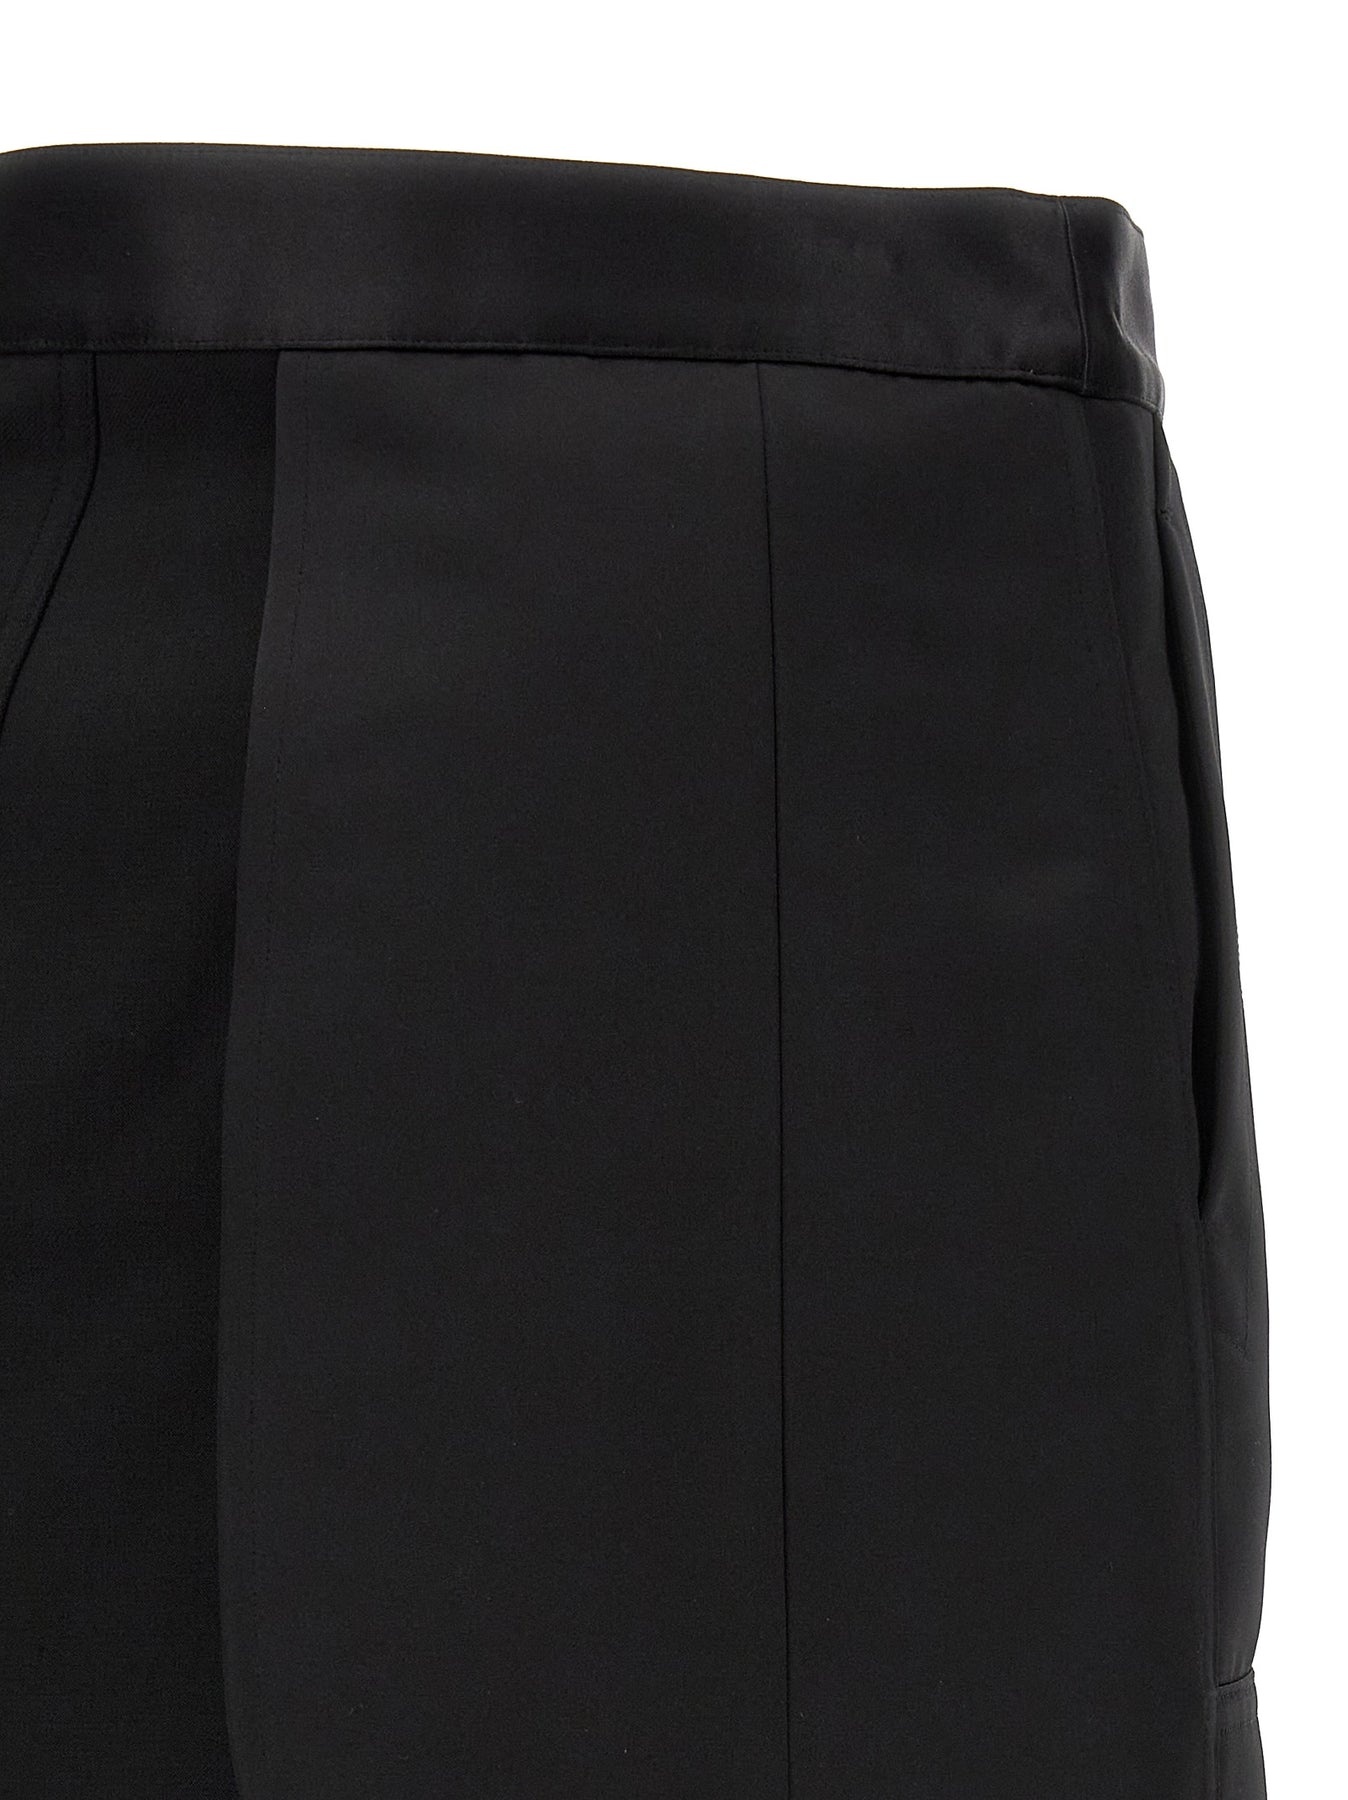 Satin Panel Skirt Skirts Black - 4